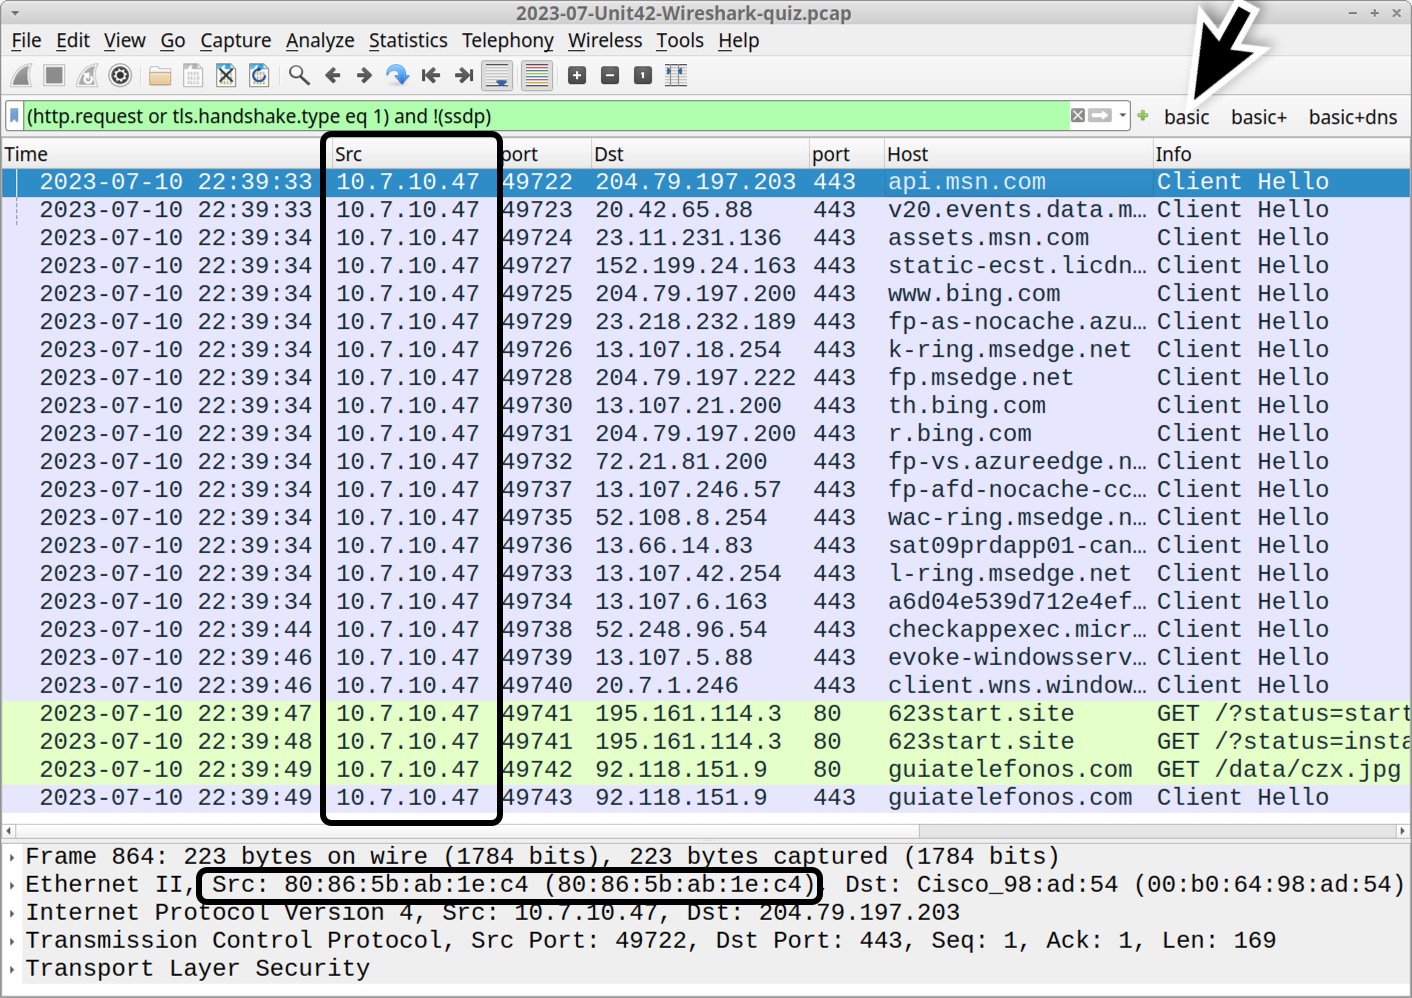 画像 1 は Wireshark のスクリーンショットです。[Src] 列が黒い四角でハイライト表示されています。これが送信元 (Source) の IP アドレスを示している列です。黒い矢印で「basic」フィルターを示しています。画面下部の 2 つめの黒い四角が MAC アドレスをハイライトしています。